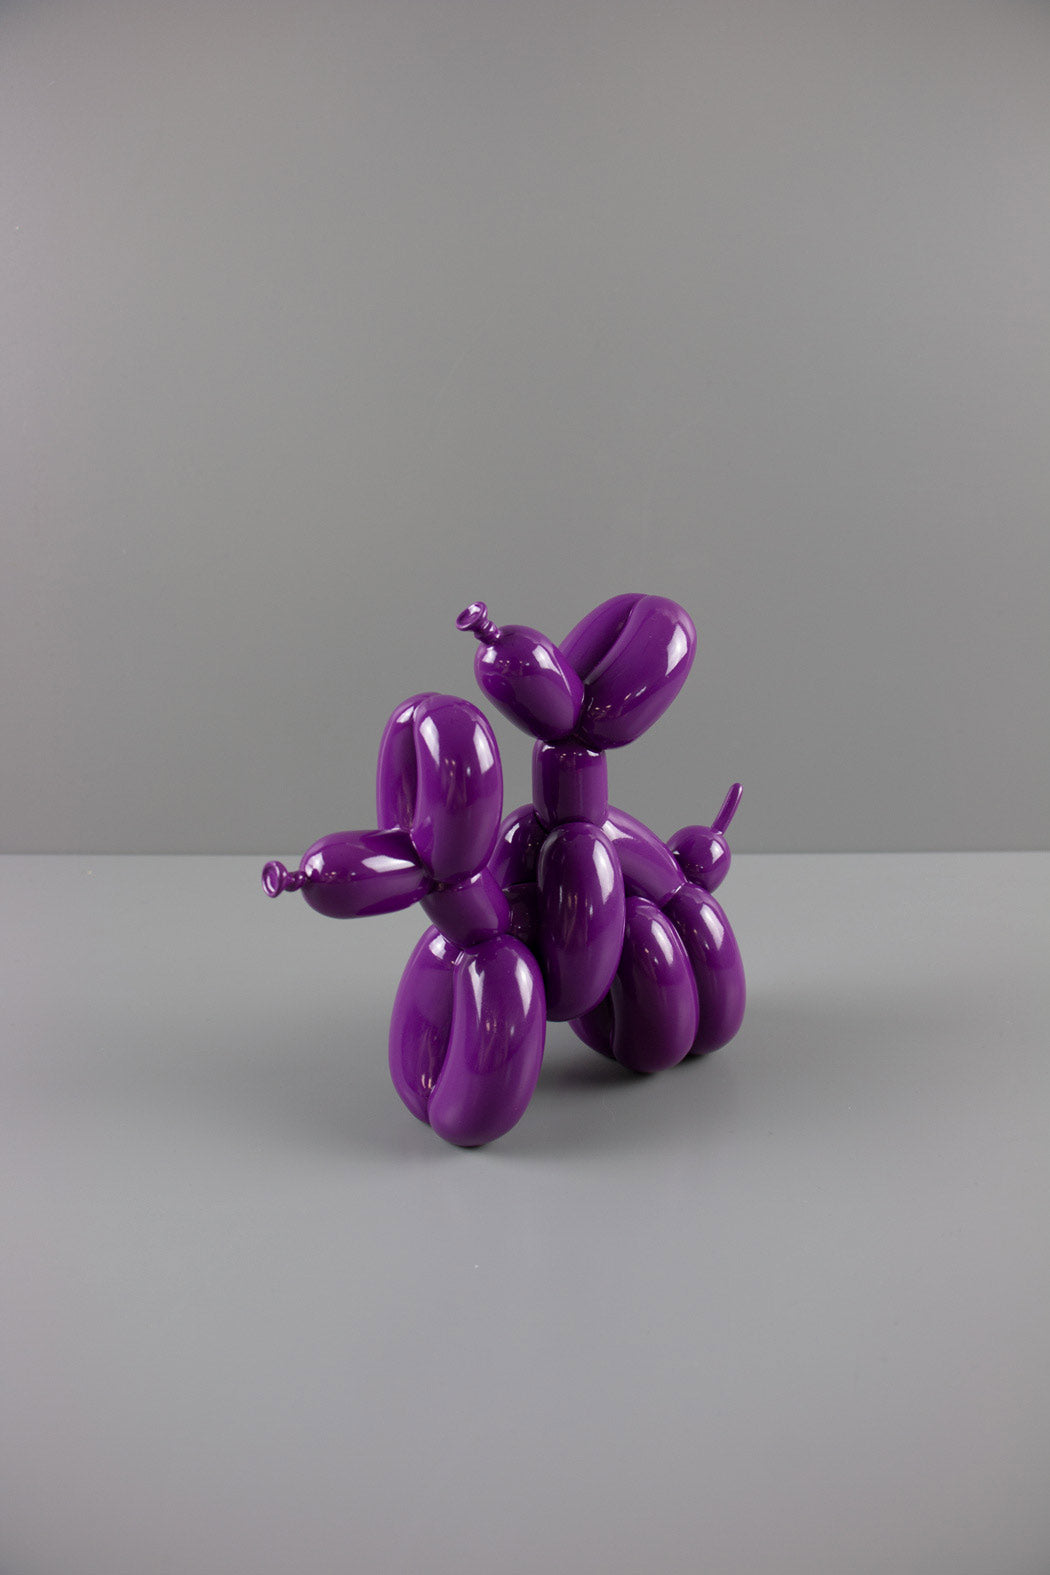 Humpek Purple Sculpture Enlarged